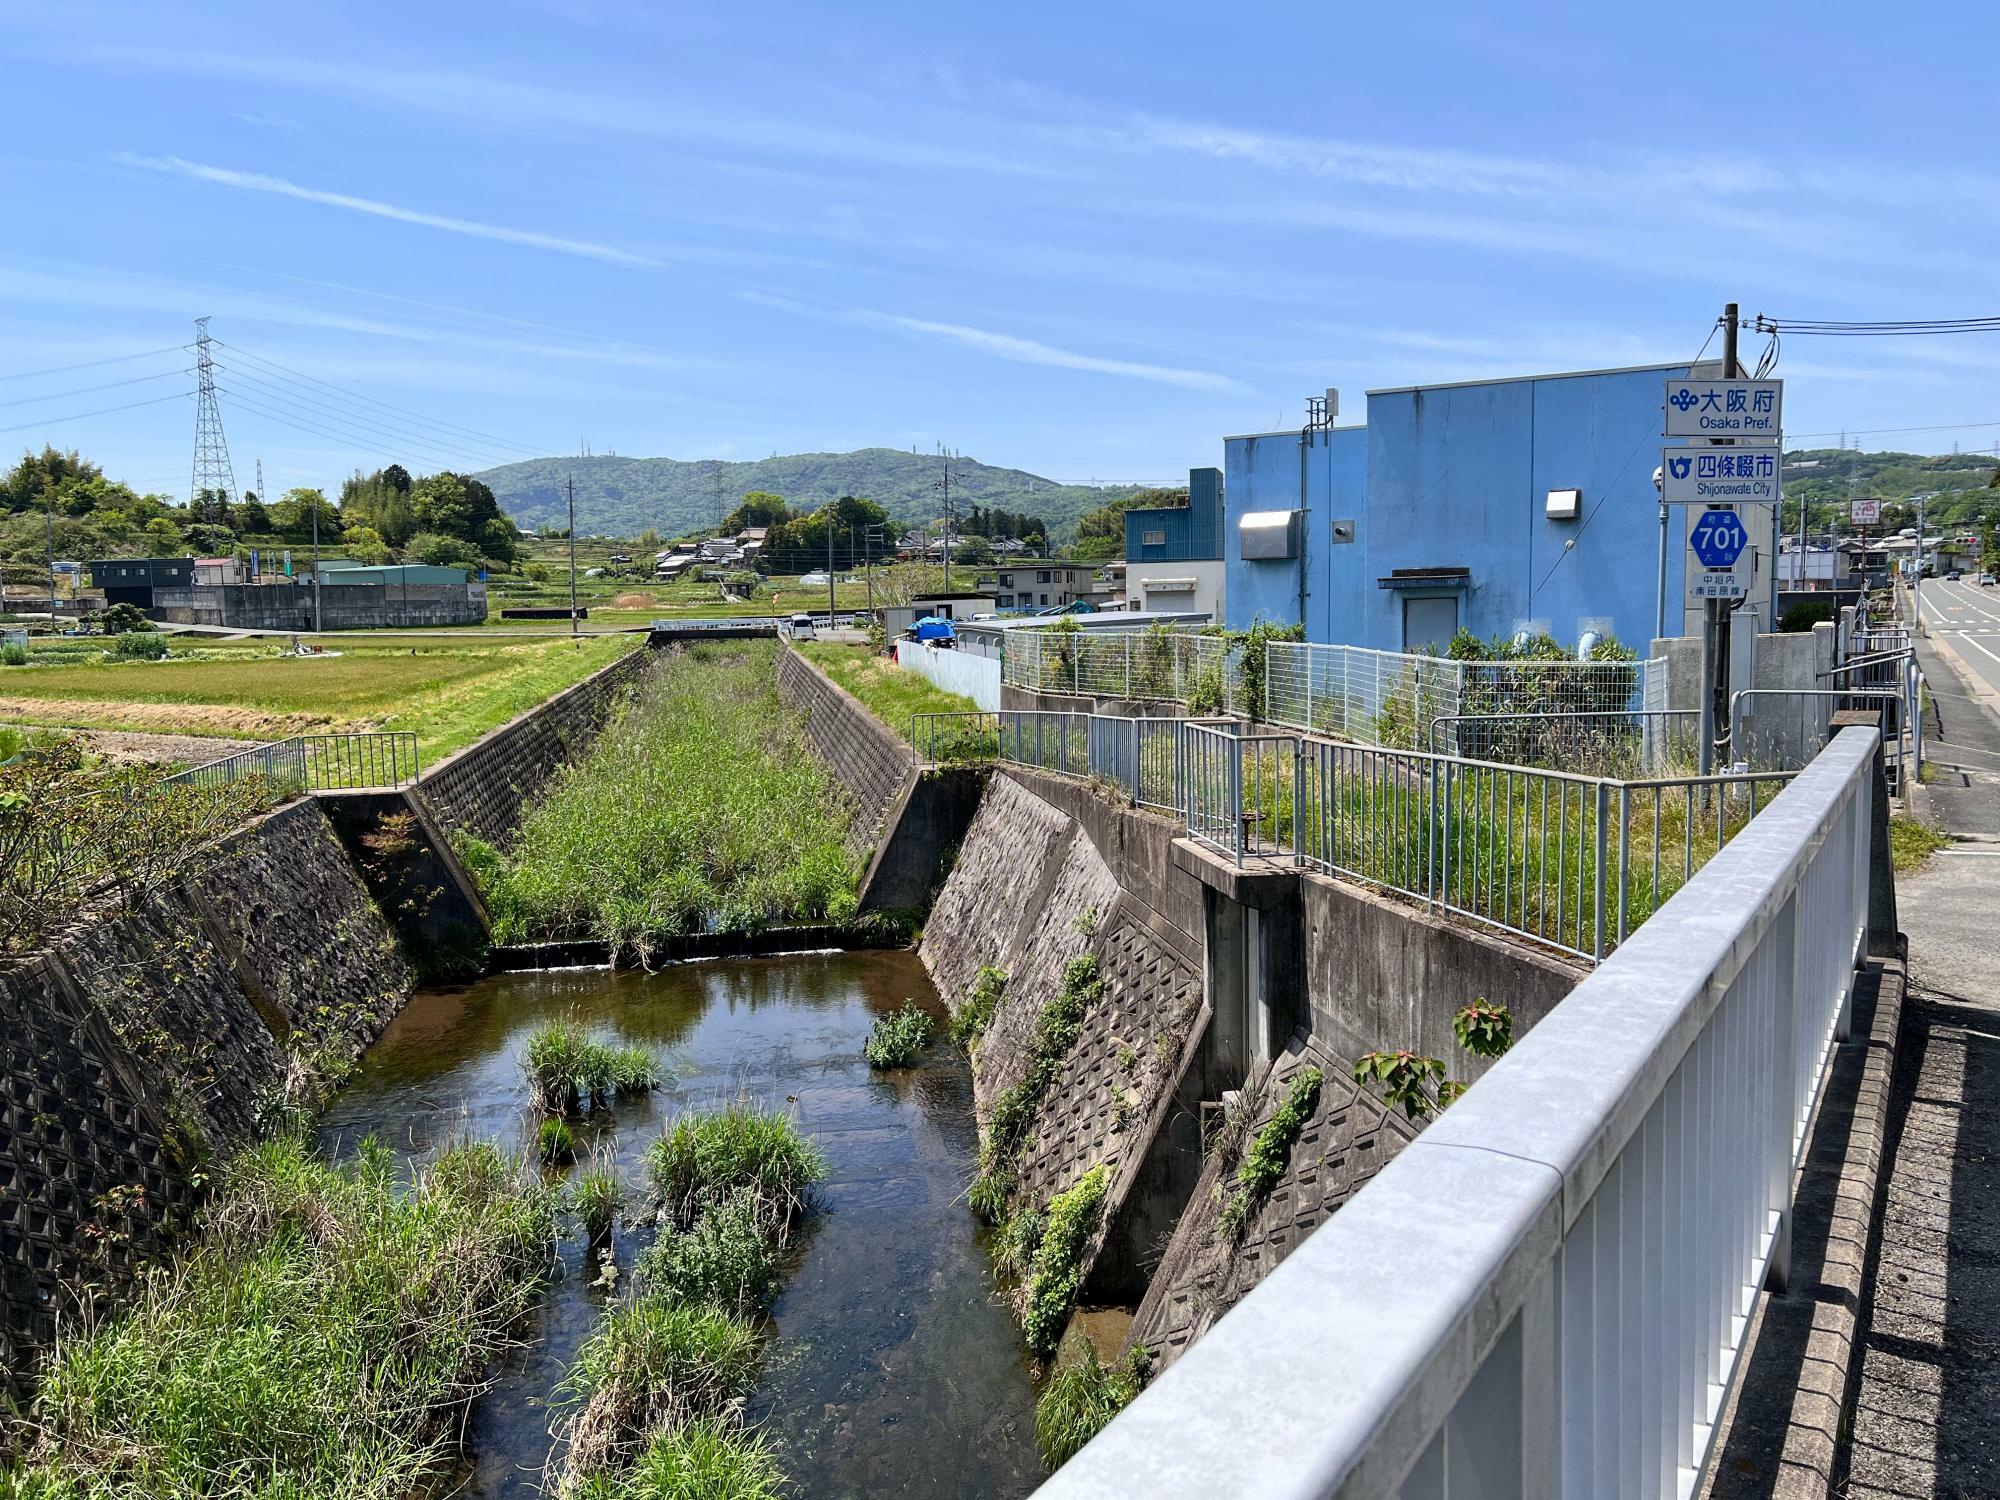 天野川に沿って府境があり、向かって右側は四條畷市、川よりも左側は生駒市